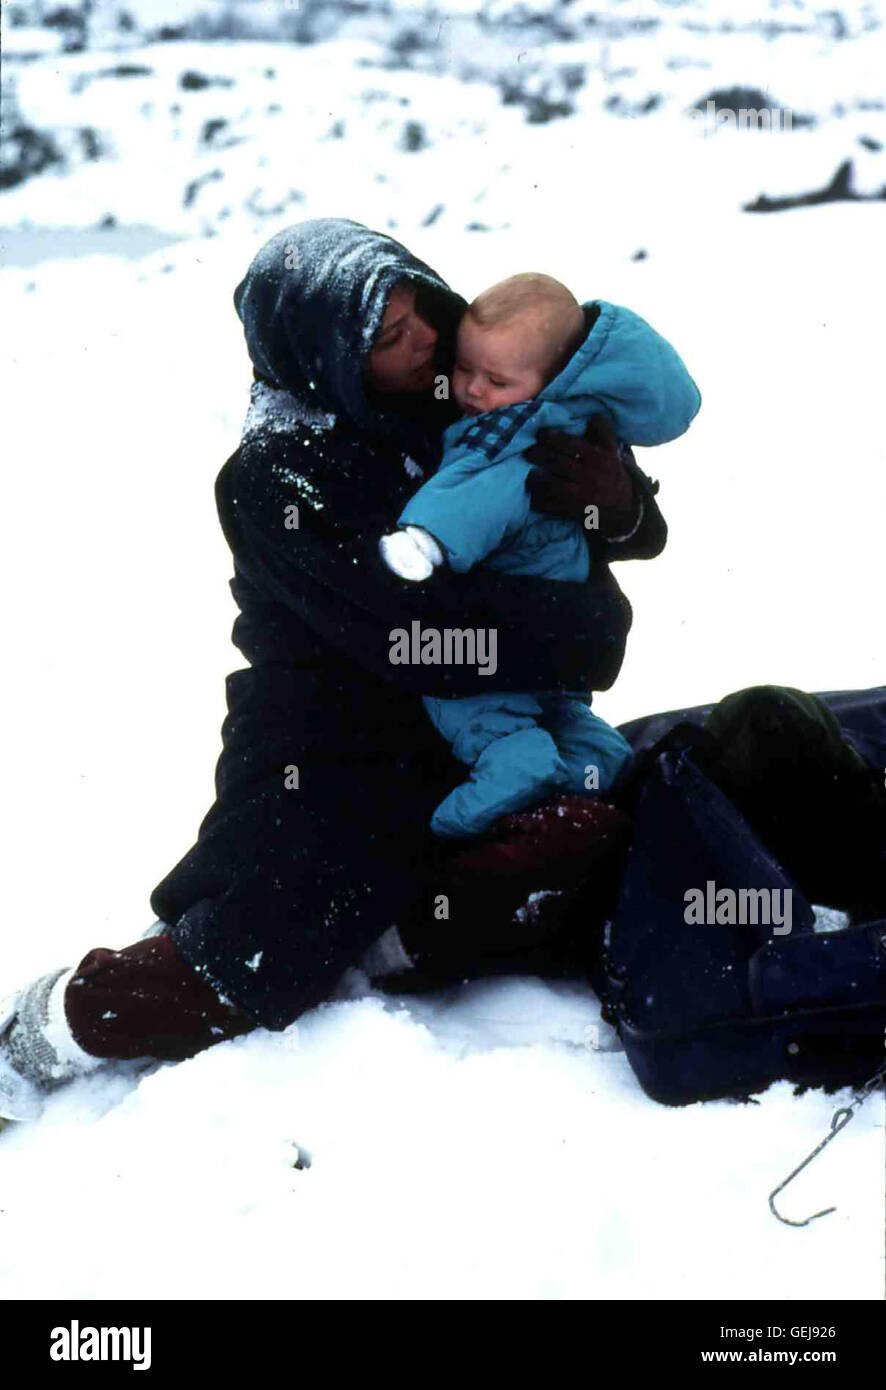 Kelli Williams Während Jim sich auf den Weg macht Hilfe zu holen, kämpft Jennifer (Kelli Williams) mit ihrem Baby ums Überleben. *** Local Caption *** 1993, Snowbound, Verloren Im Schneesturm - Eine Familie Kämpft ... Stock Photo